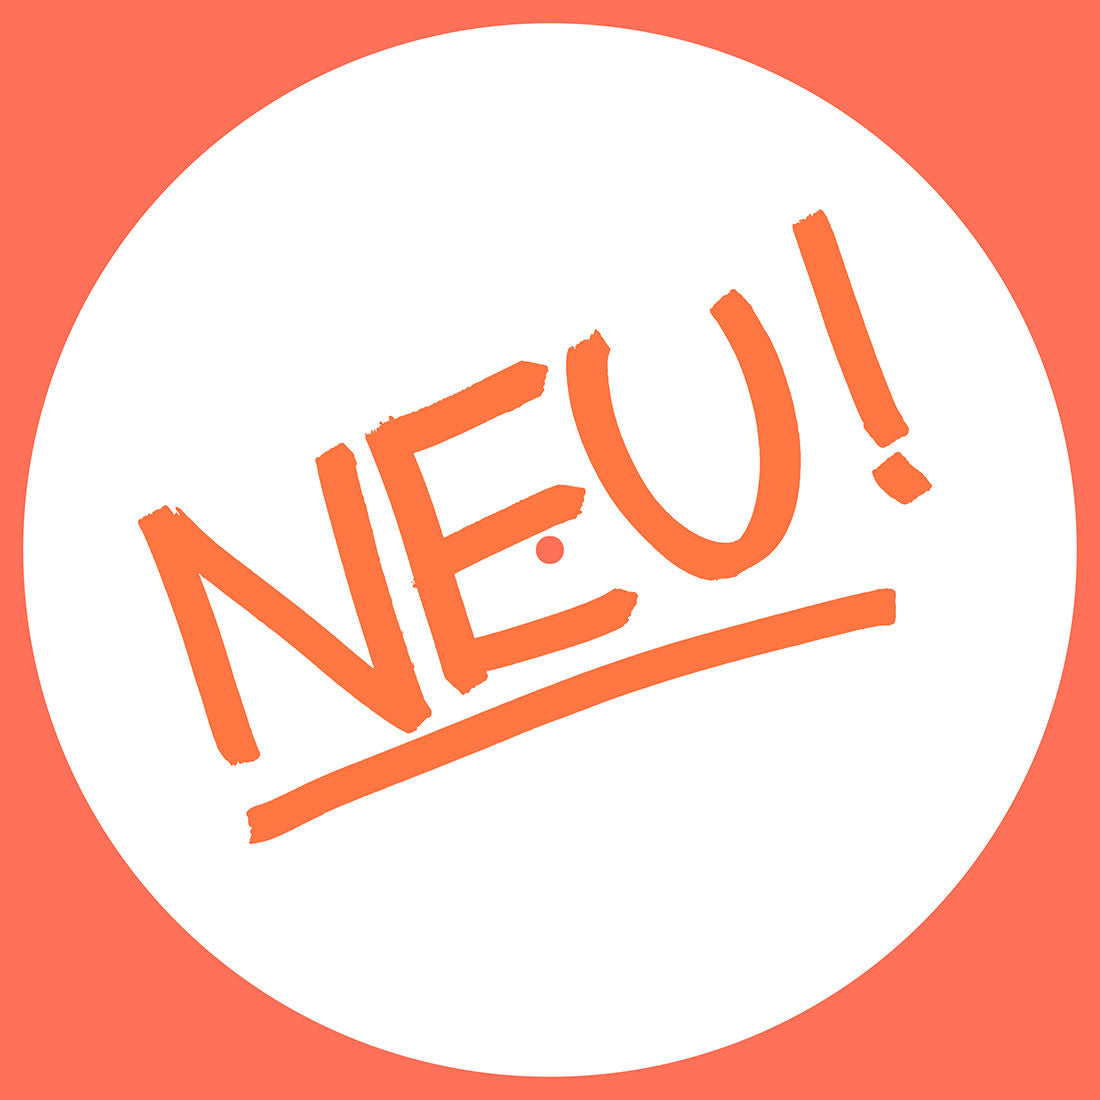 NEU! - NEU!: Limited Picture Disc Vinyl LP